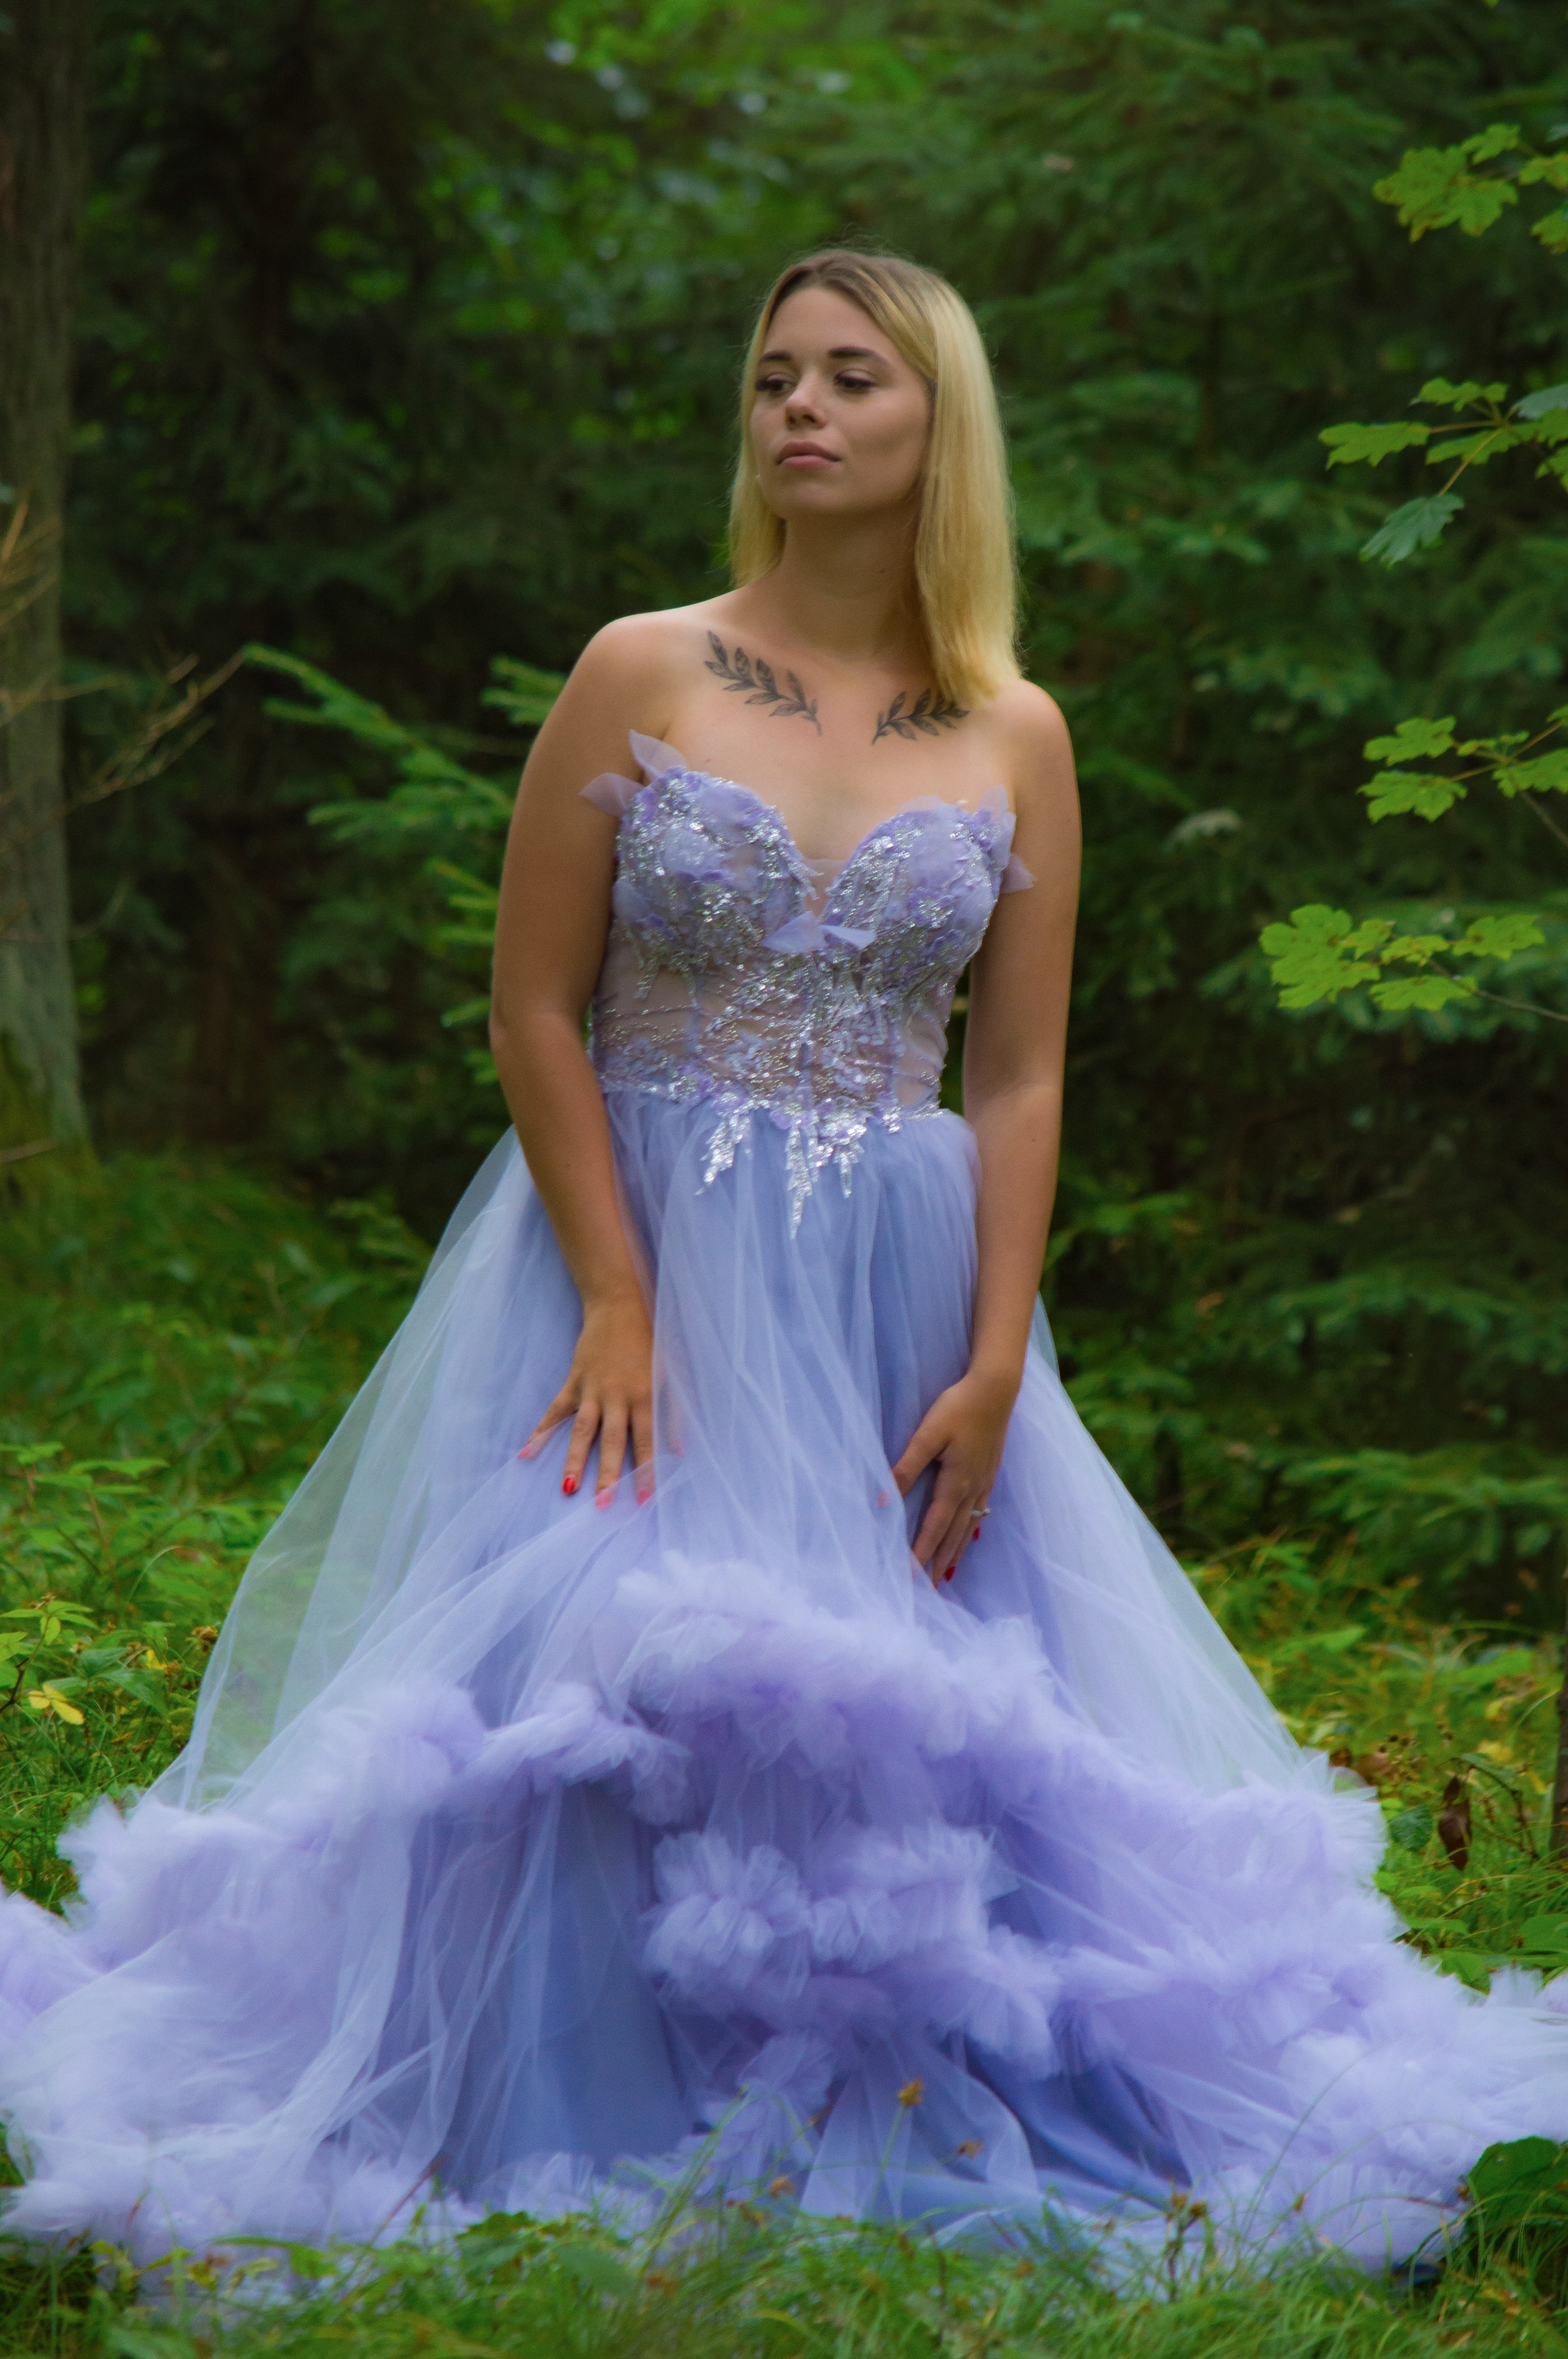 Obrázek ženy se světle fialovými společenskými šaty